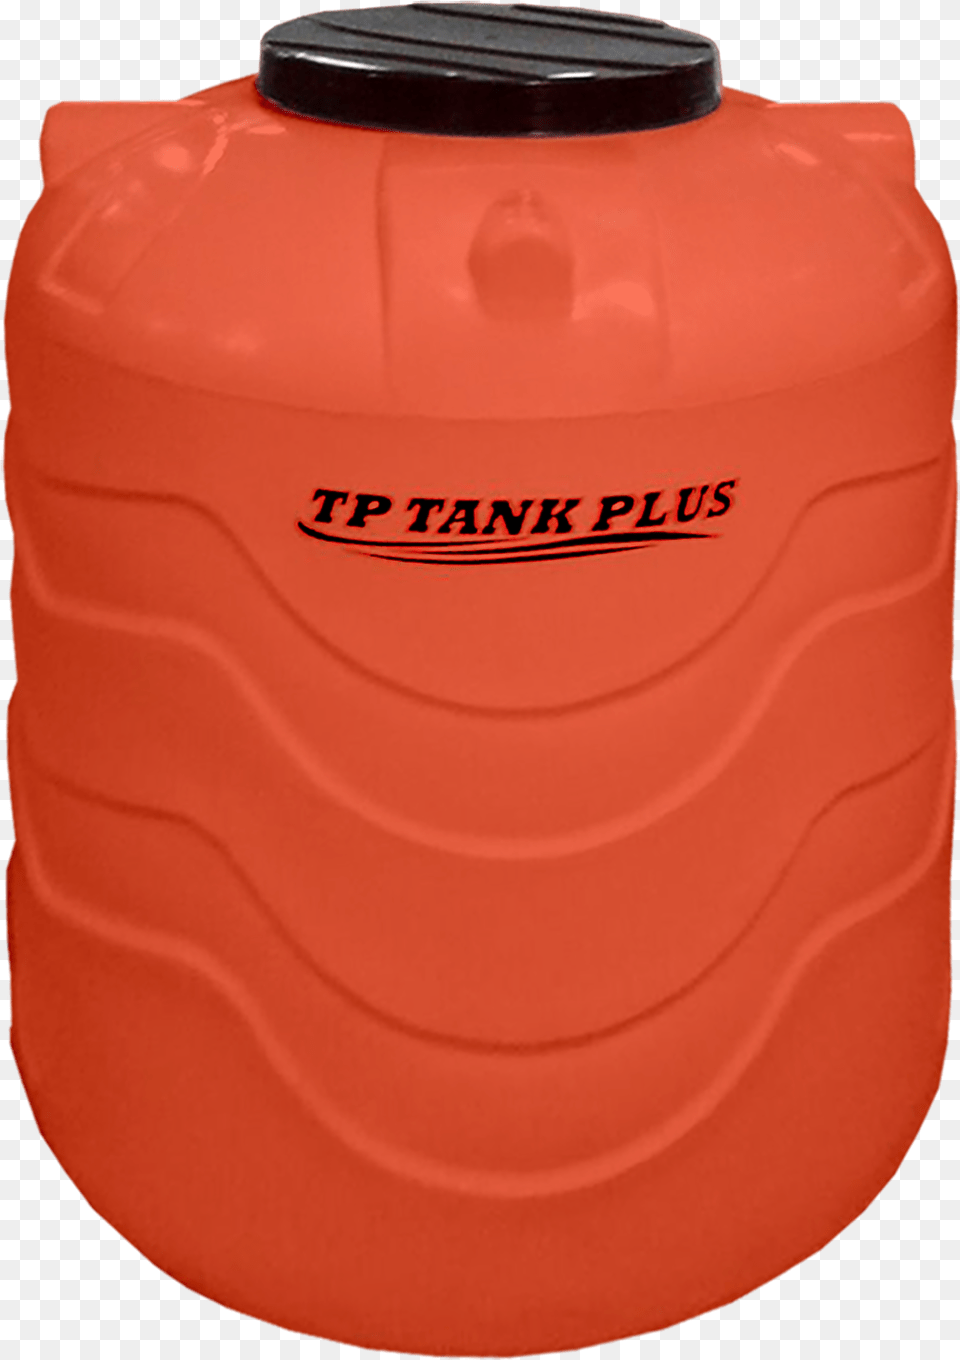 Tank Plus Water Tank Orange Water, Jug, Water Jug, Barrel Png Image